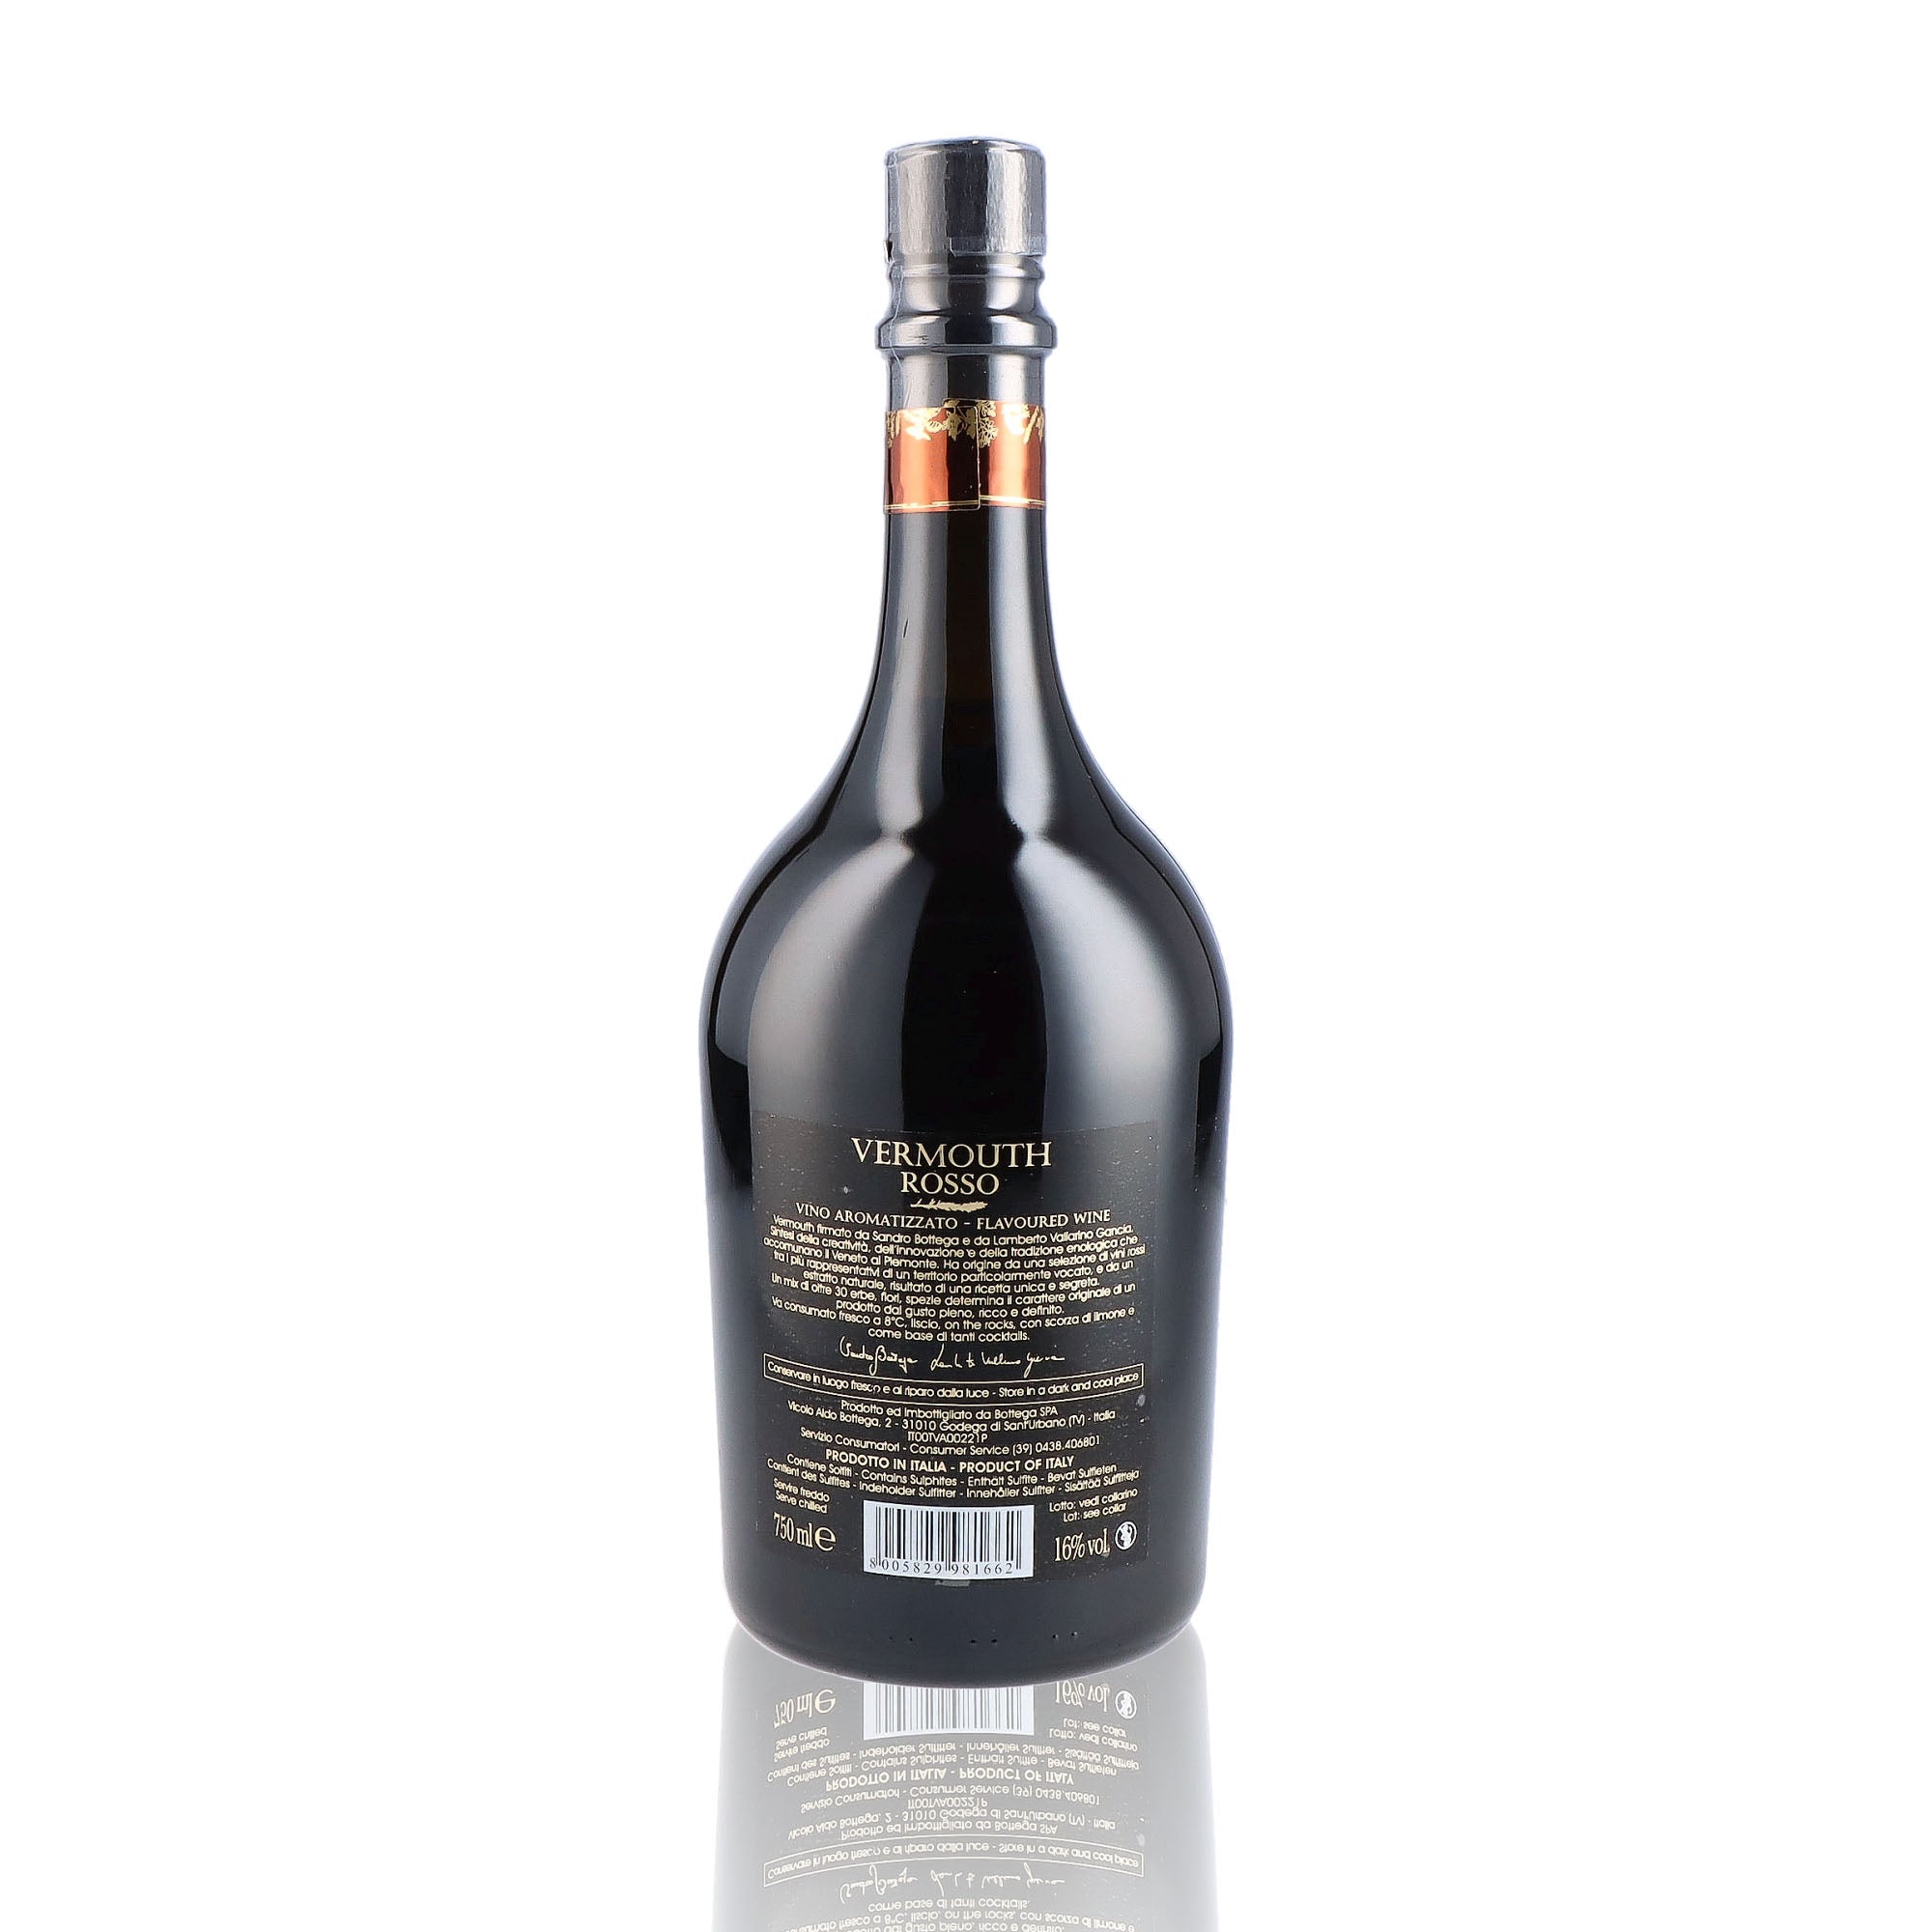 Une bouteille de vermouth, de la marque Bottega, nommée Rosso.